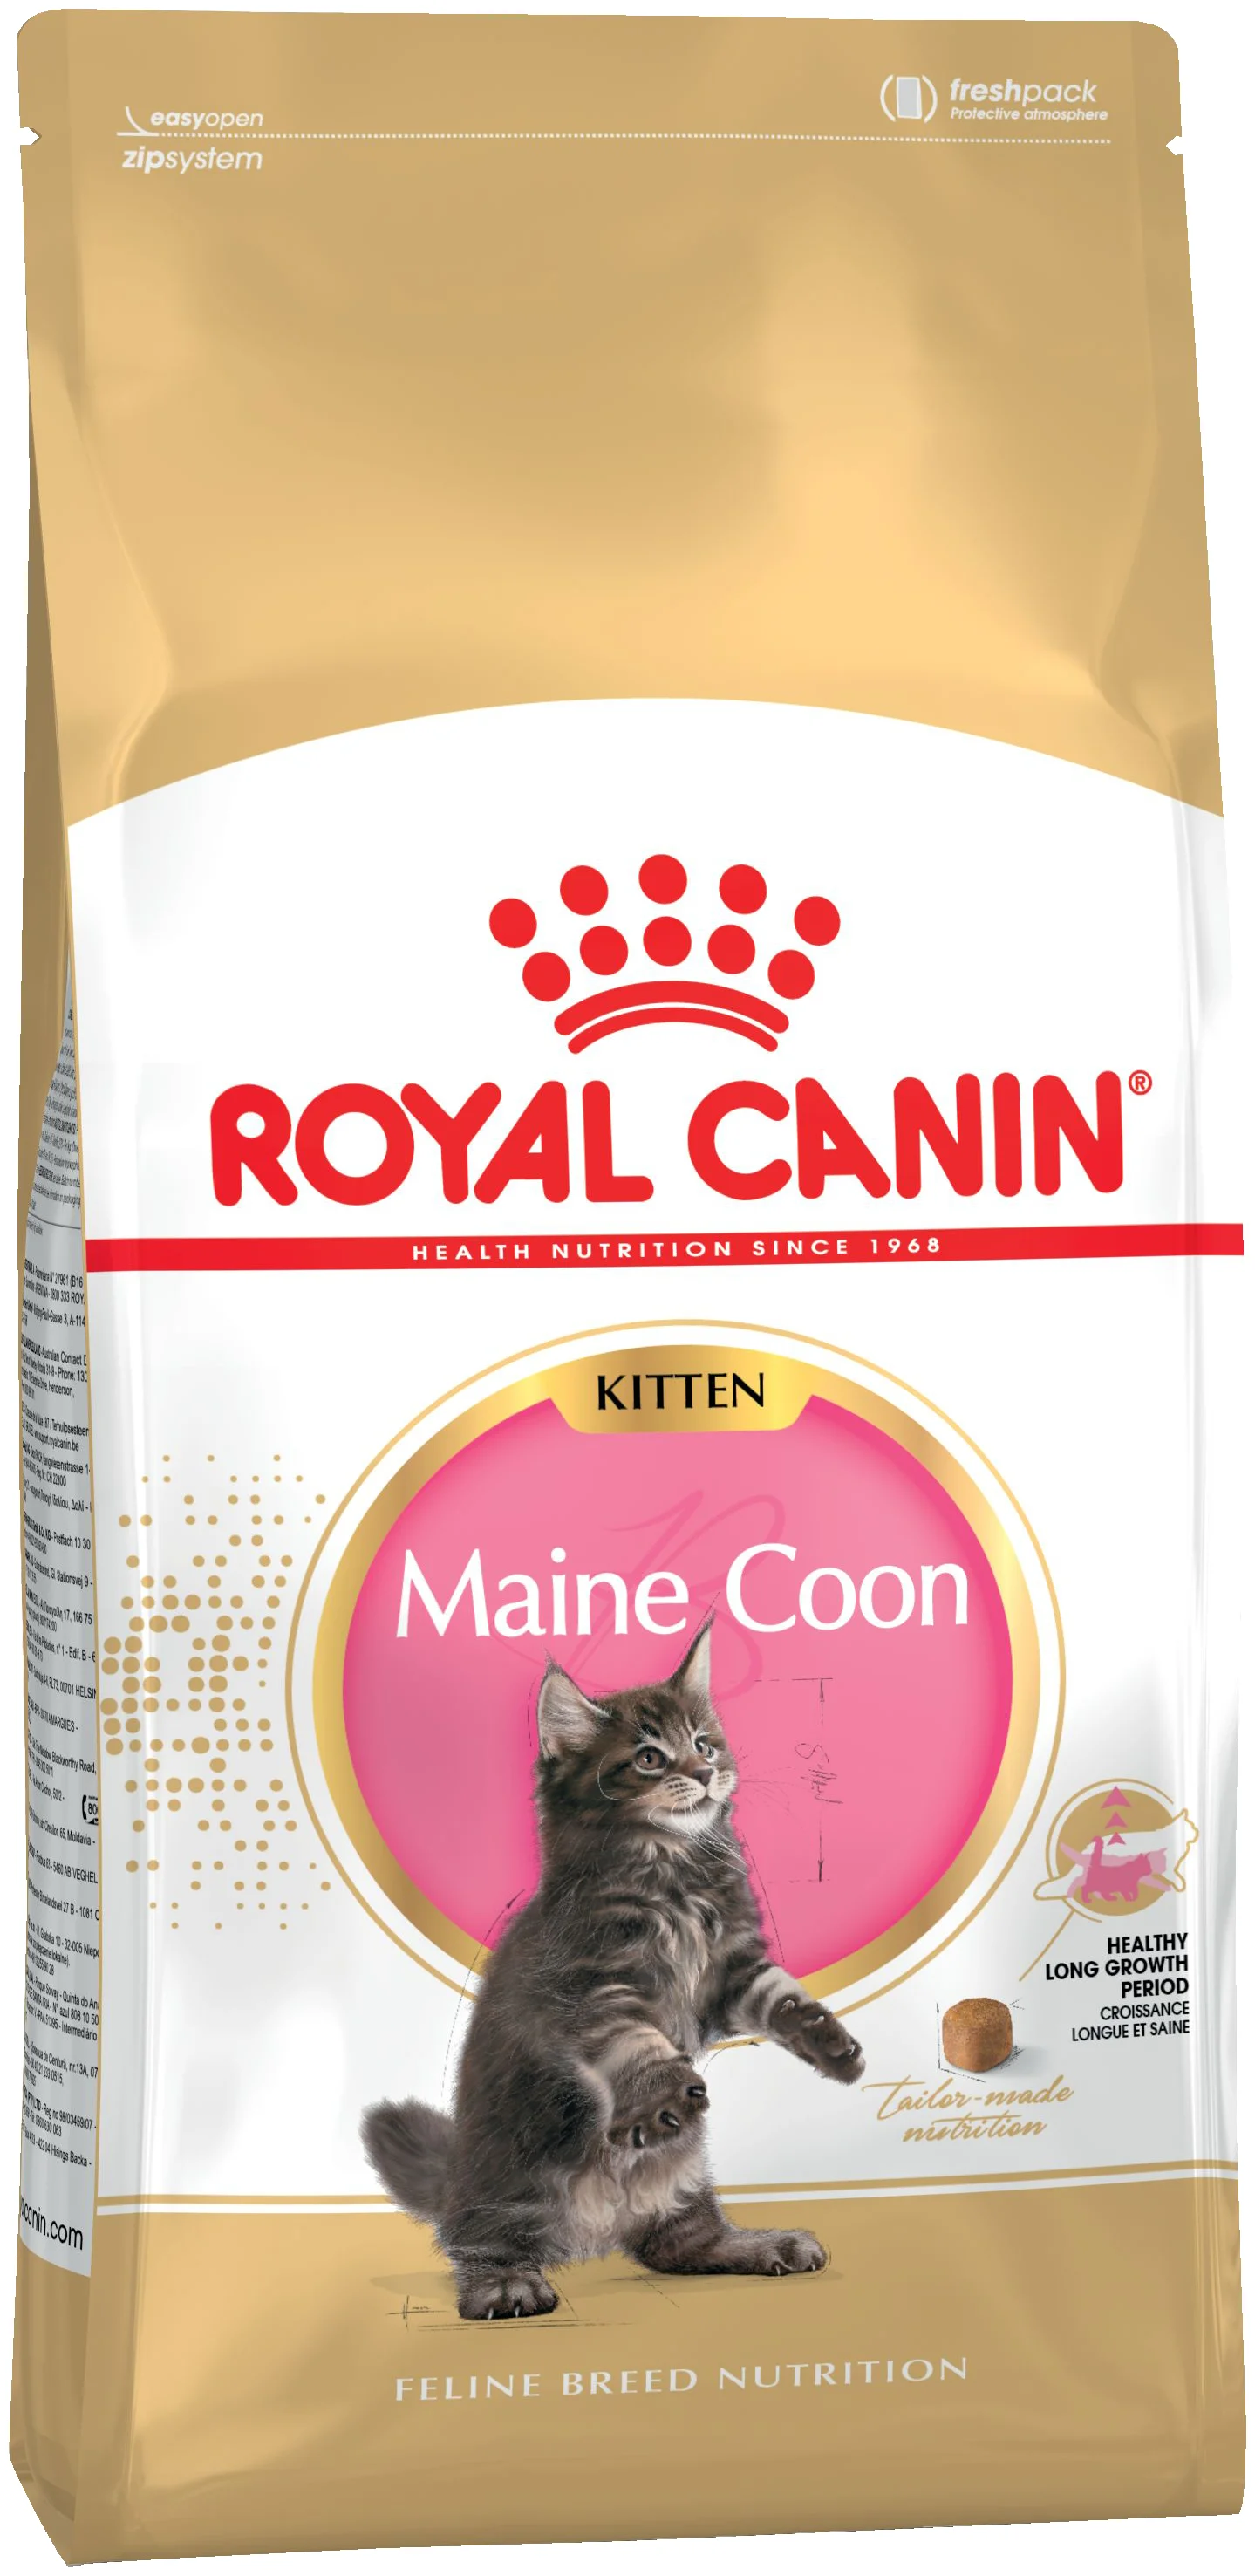 Royal Canin "Мейн-кун" - класс ингредиентов: премиум